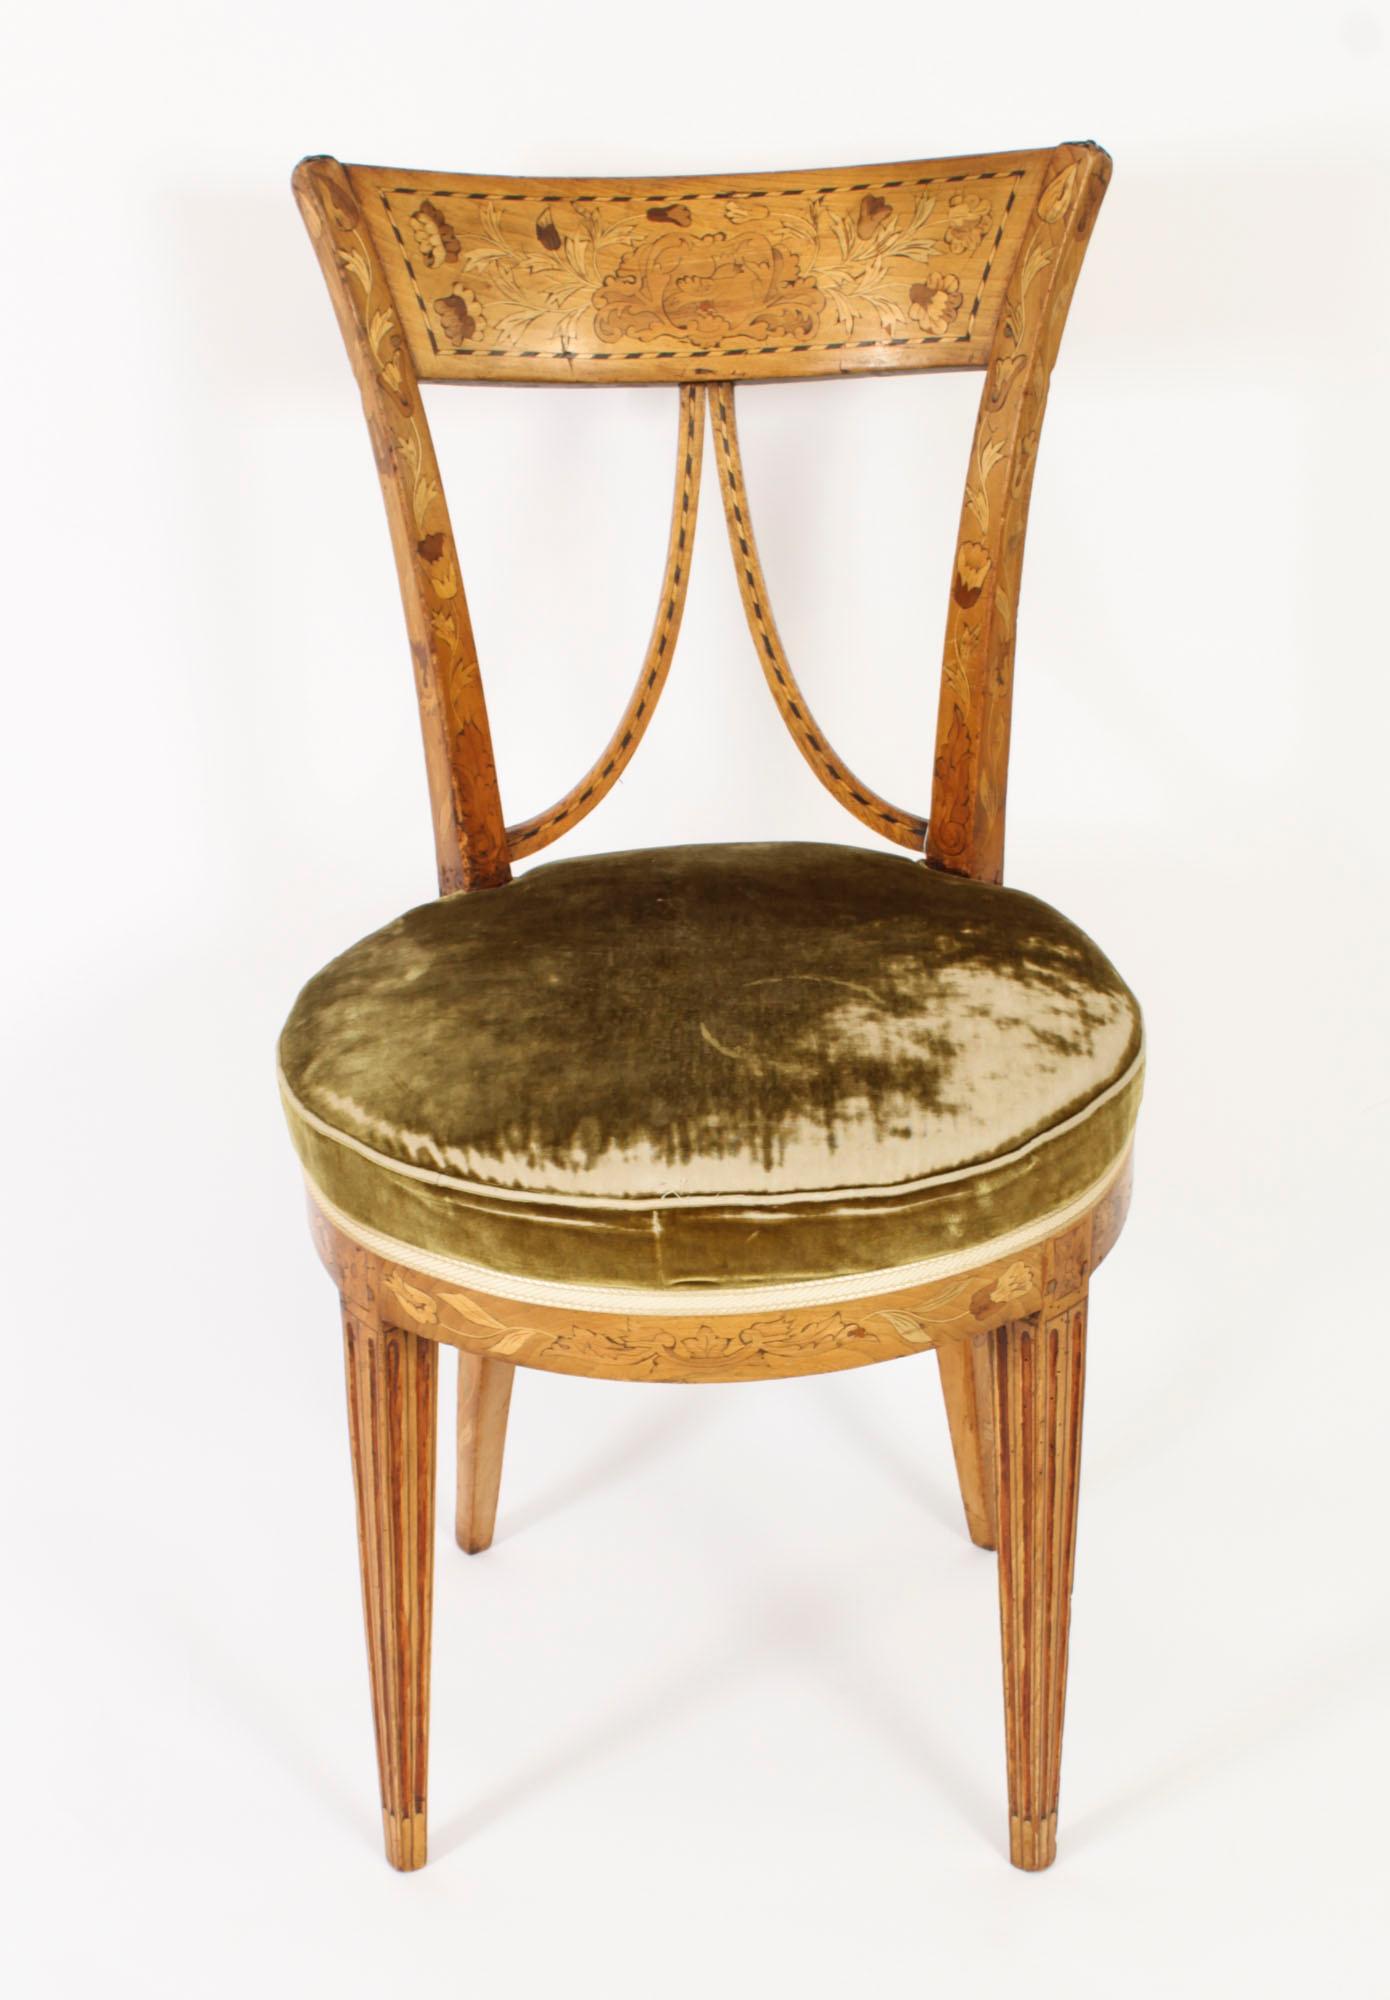 Dies ist eine schöne antike niederländische V zurück Satinholz und Intarsien Stuhl, ca. 1830 in Datum.

Der atemberaubende Stuhl hat folgende Eigenschaften  prächtige florale Intarsienarbeit mit ebonisierter Linieneinlage.

Der übergepolsterte Sitz